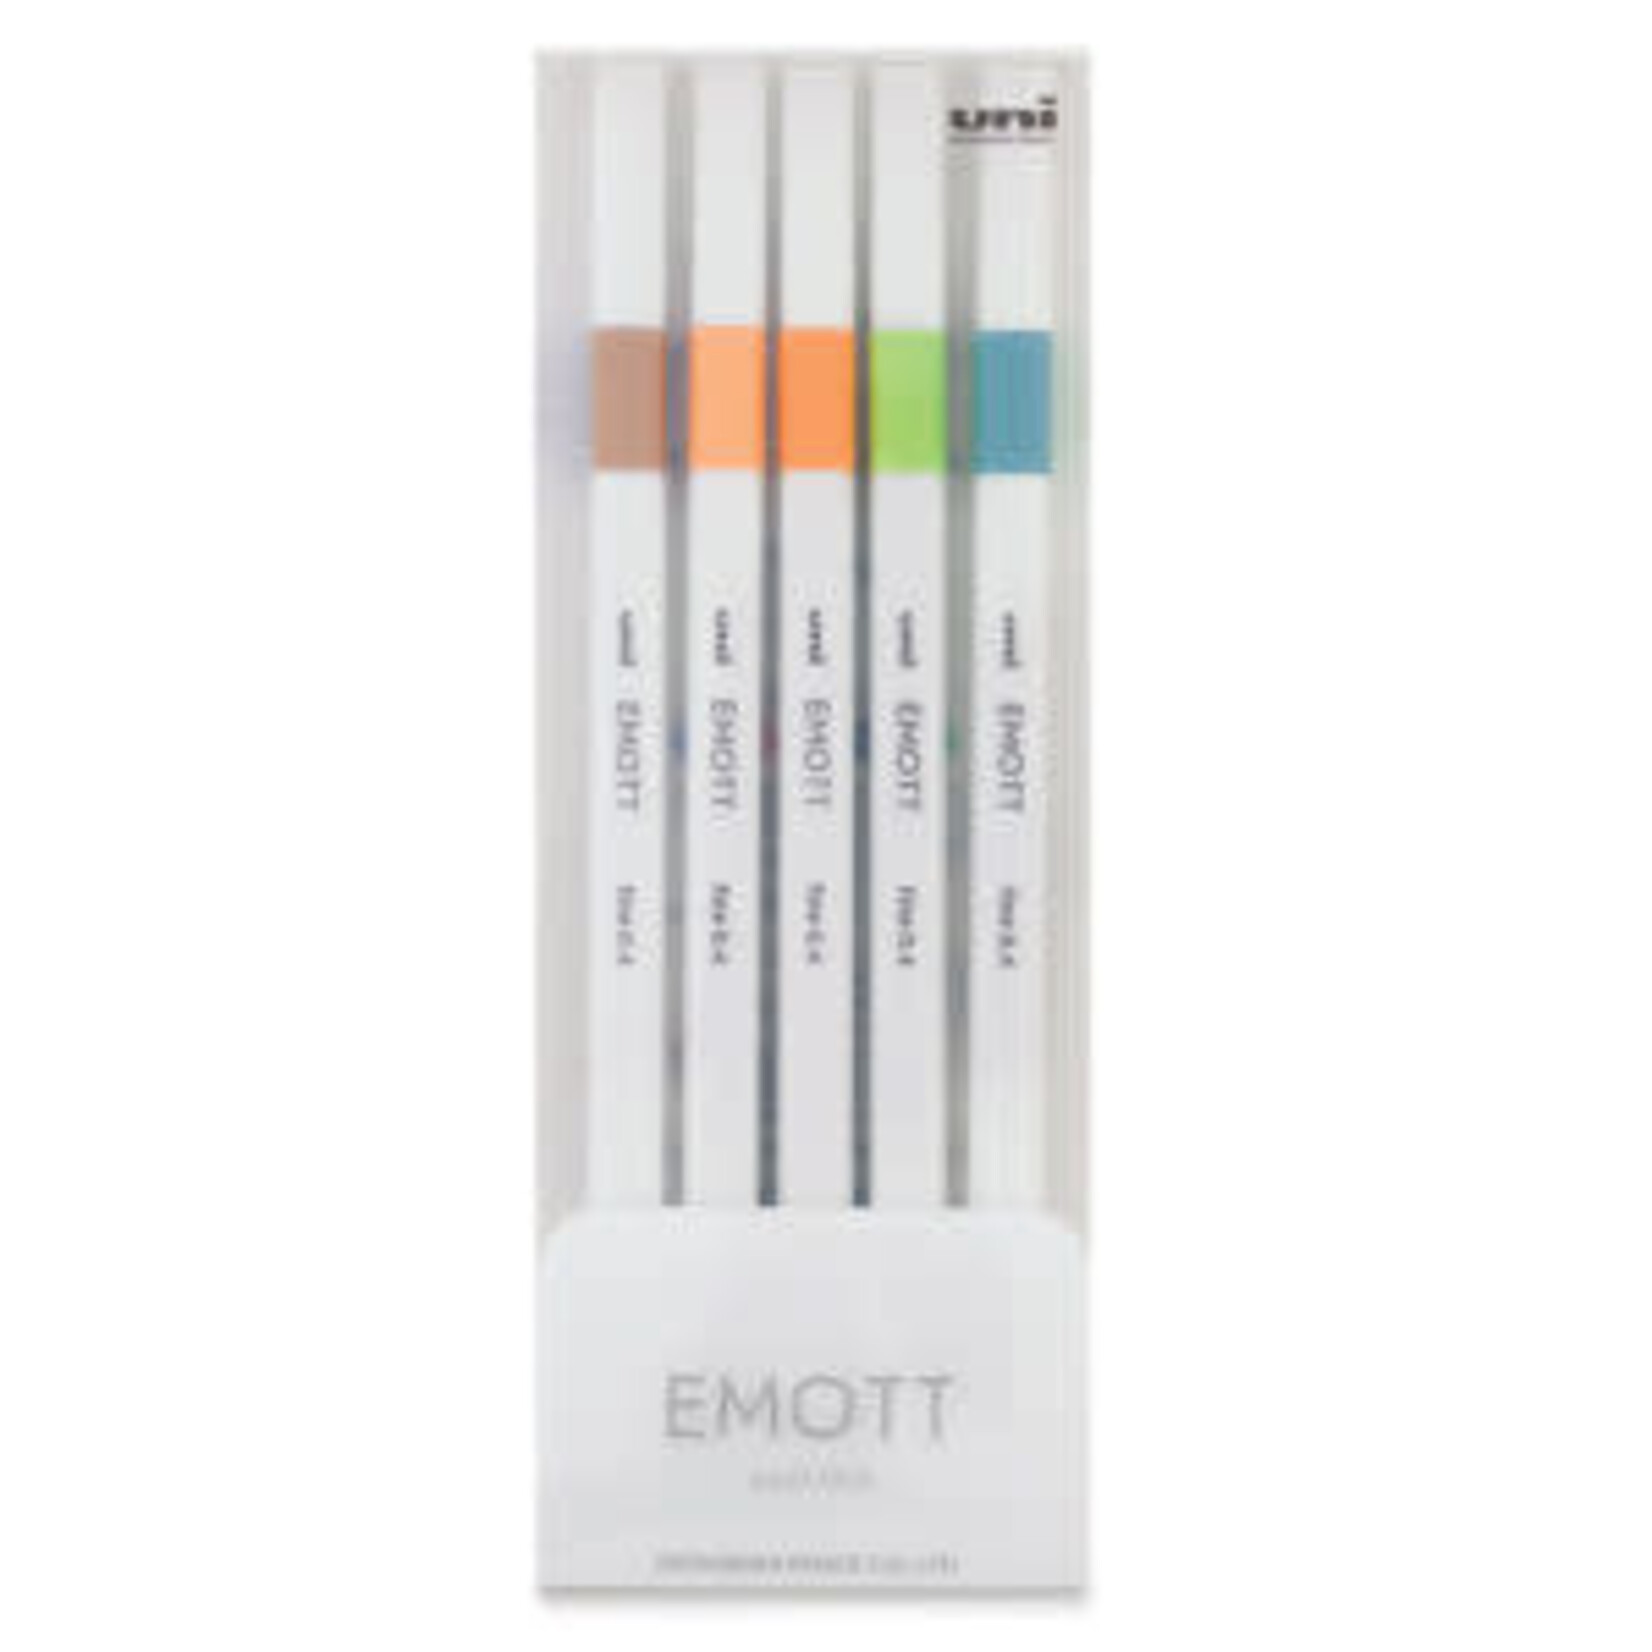 Emott EMOTT Fineliner Pen Sets, 5-Pen Set #6